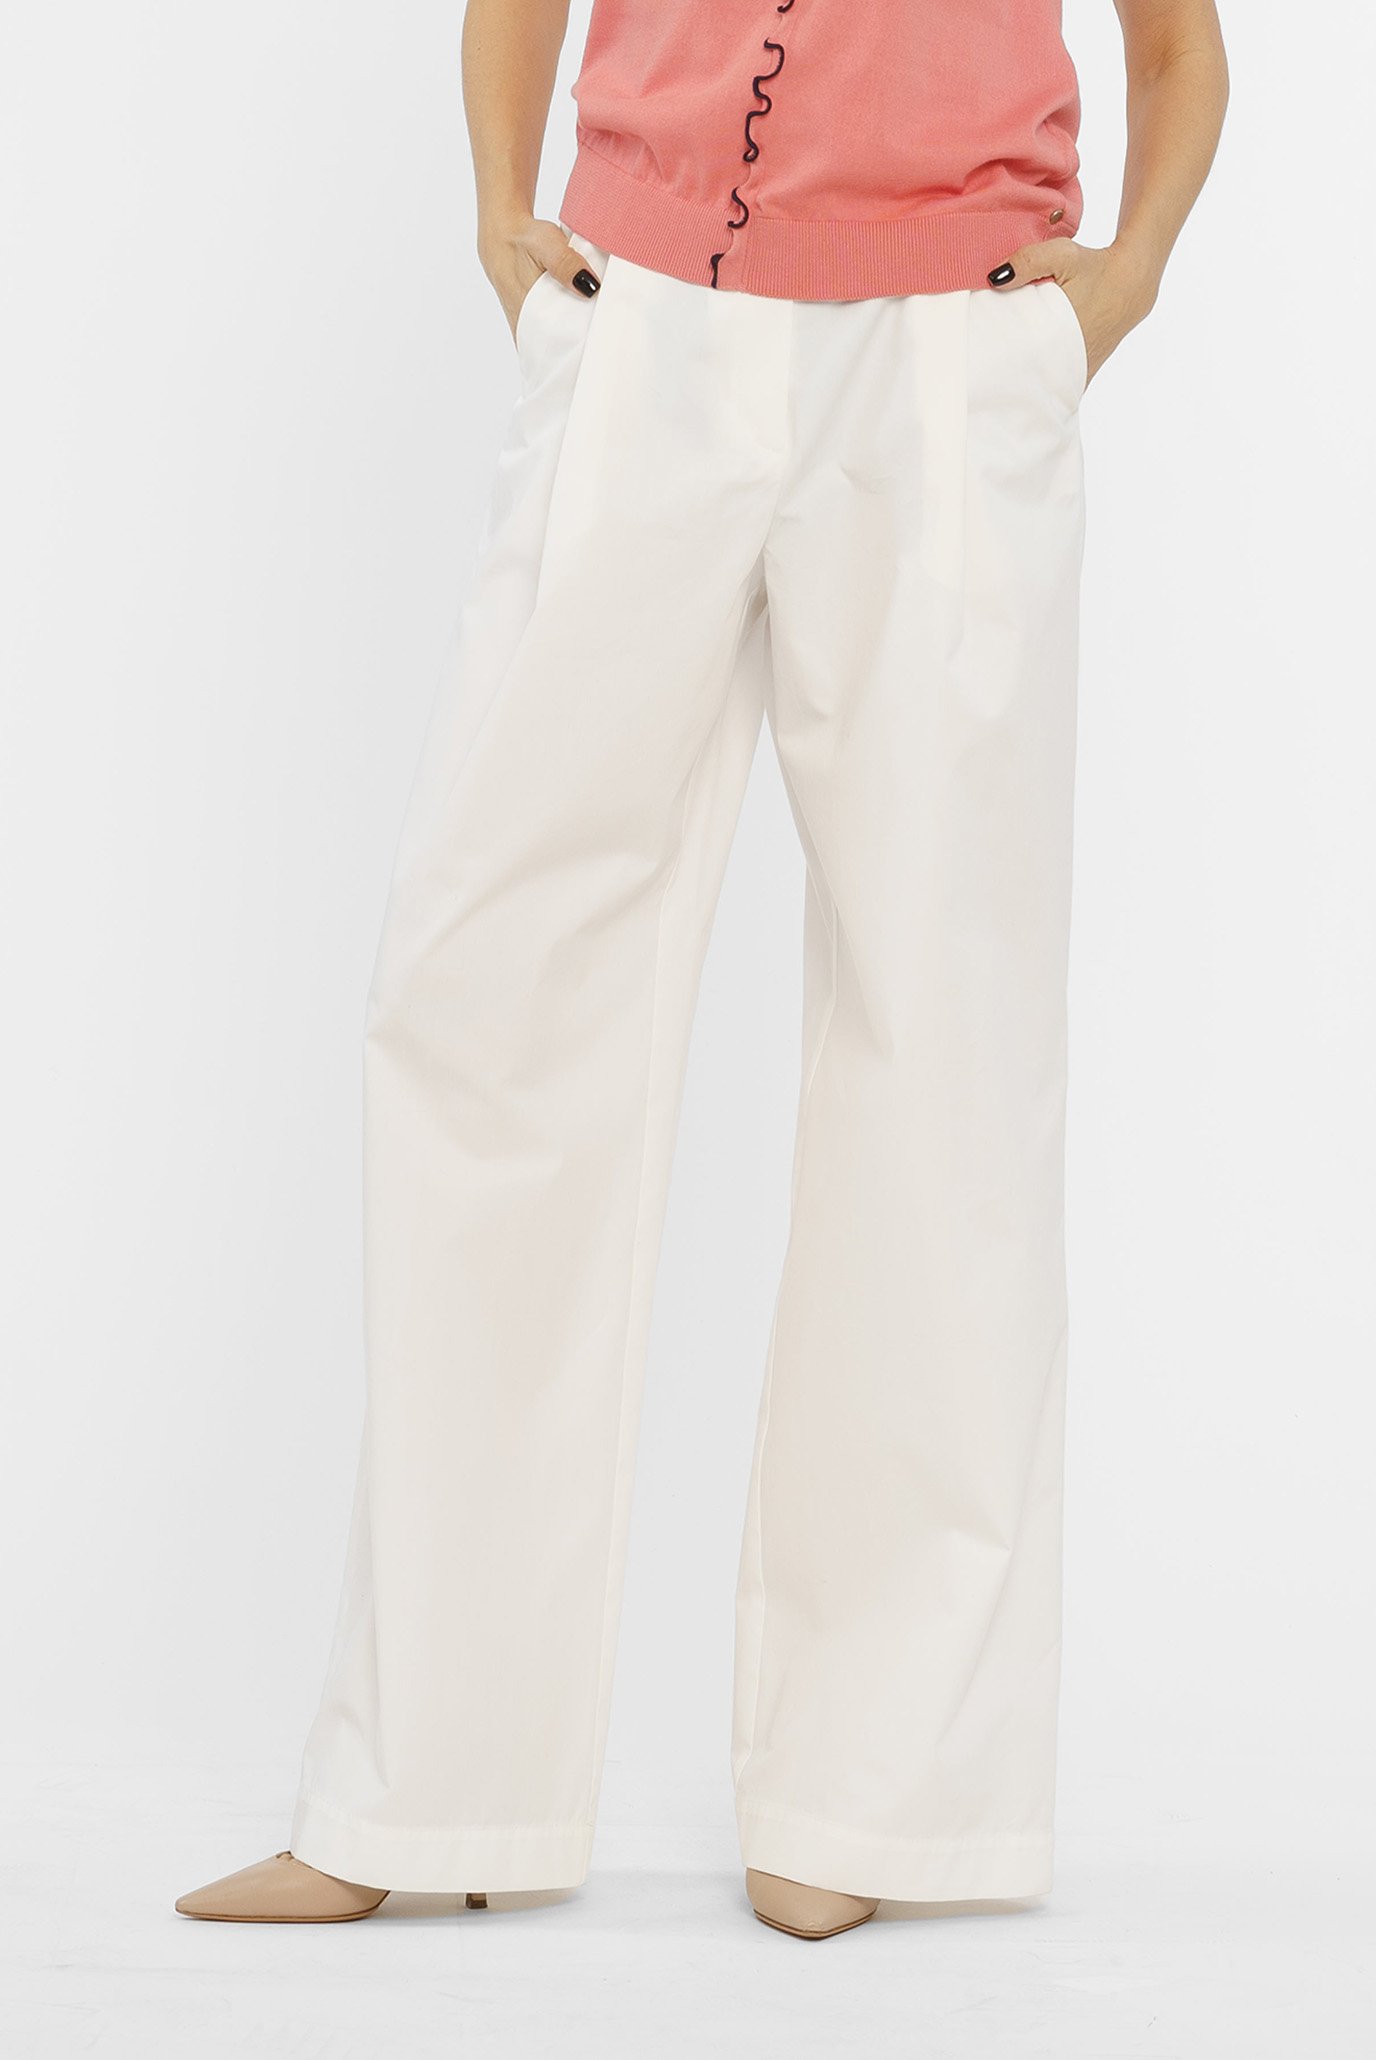 Жіночі білі брюки 1